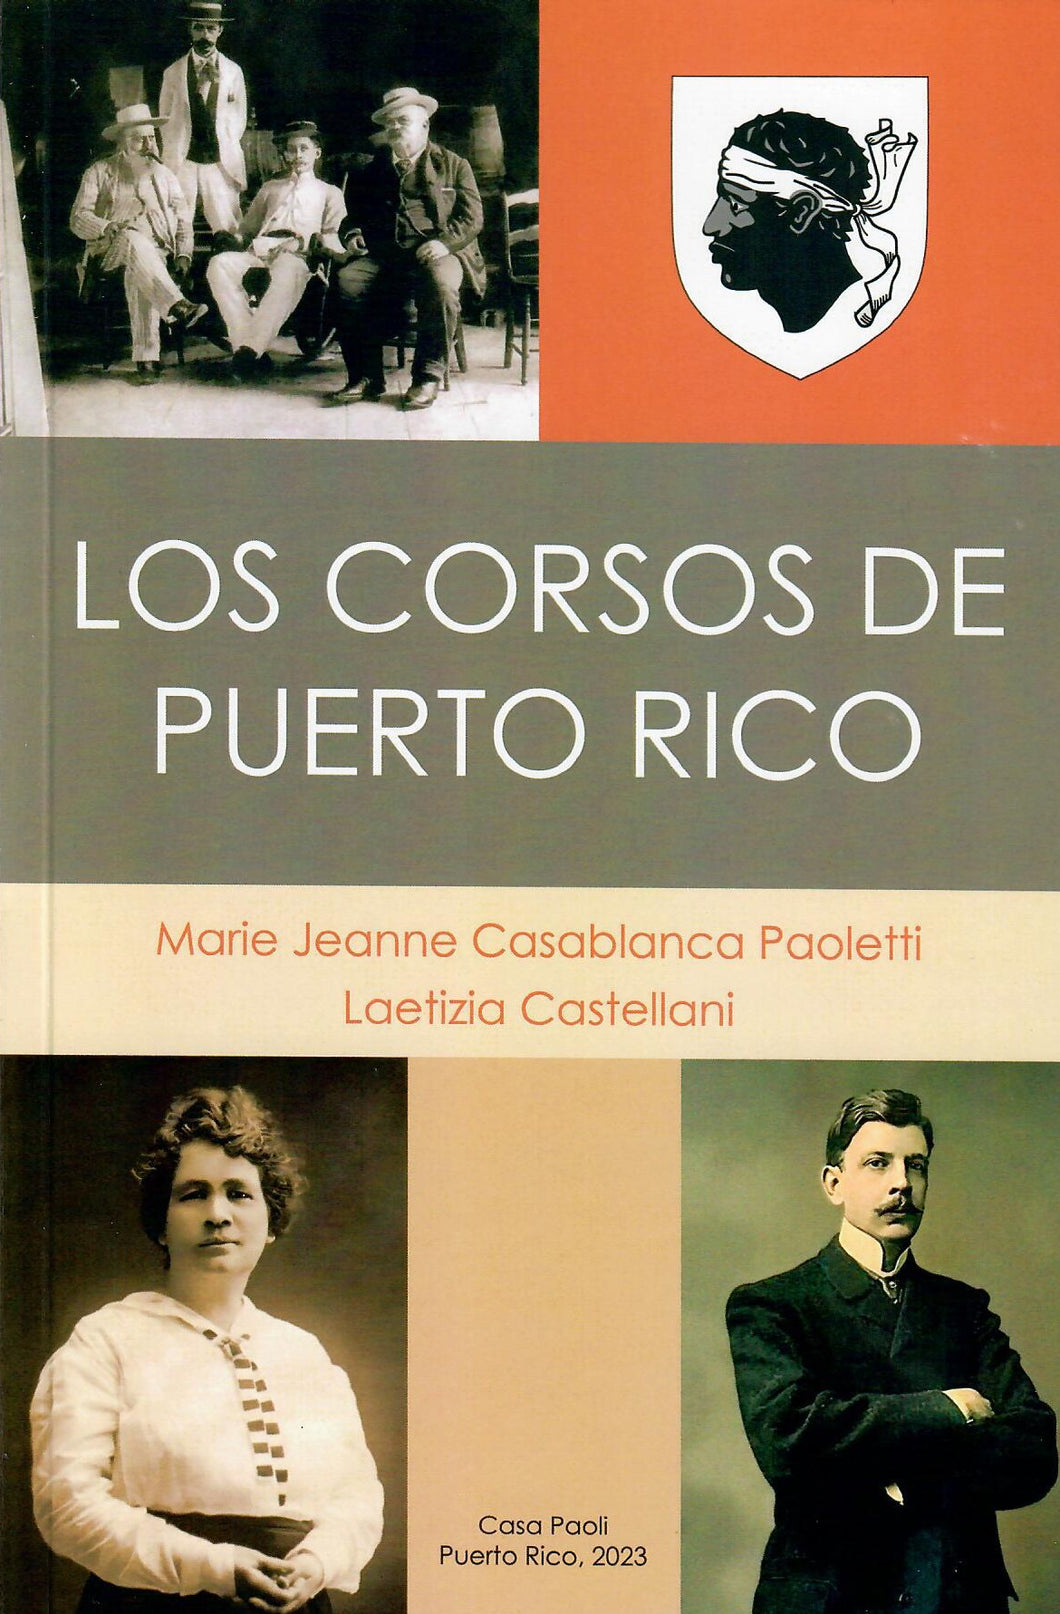 LOS CORSOS DE PUERTO RICO - Marie Jeanne Casablanca Paoletti y Laetizia Castellani